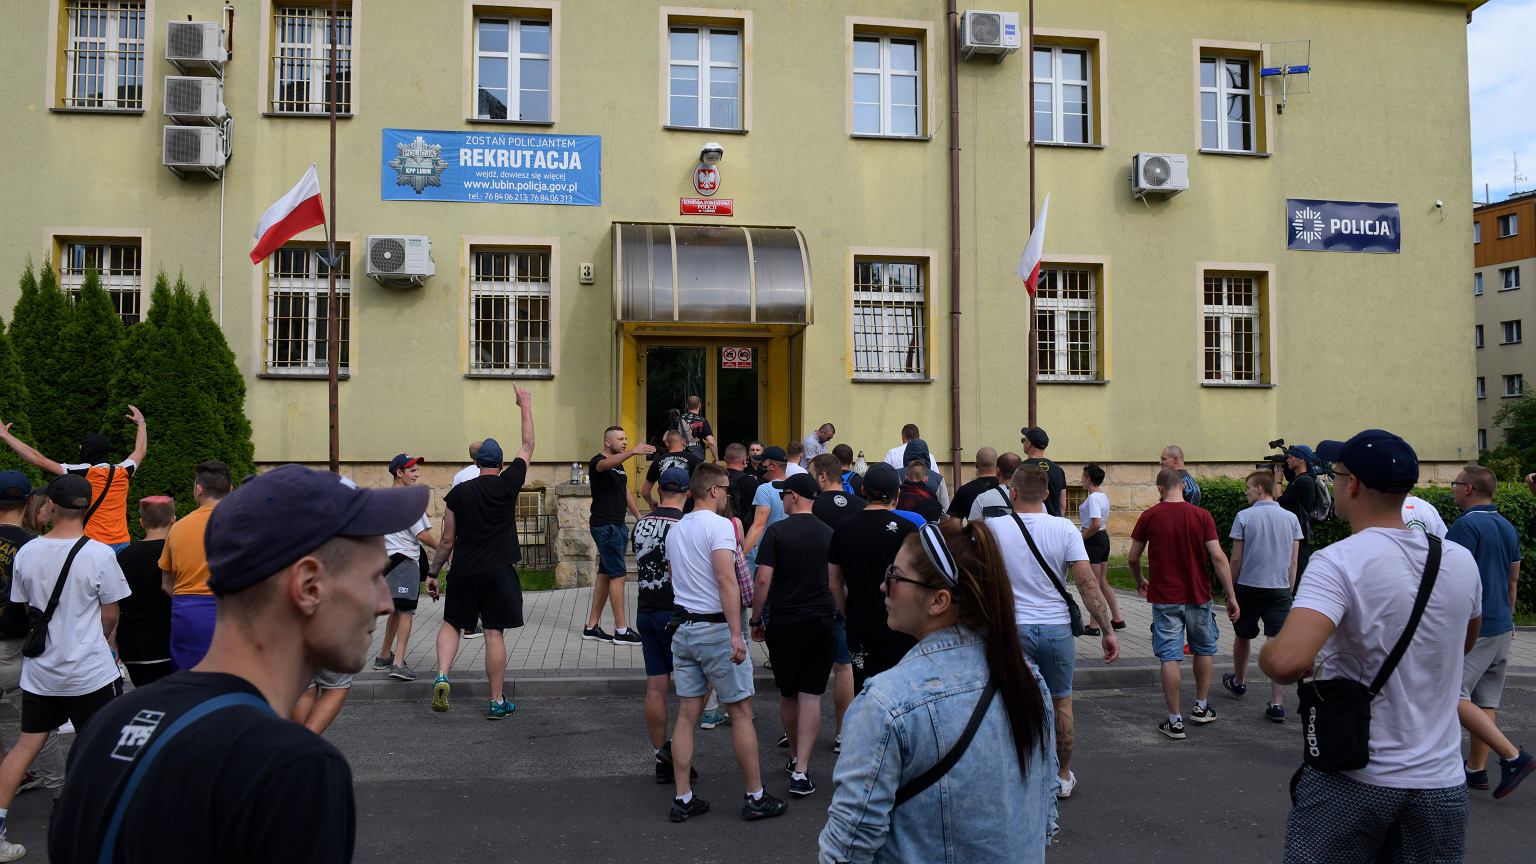 Zamieszki w Lubinie. Ekspert: Ludzie widzą, że policja w Polsce bardzo często jest ponad prawem - Wiadomosci Gazeta.pl